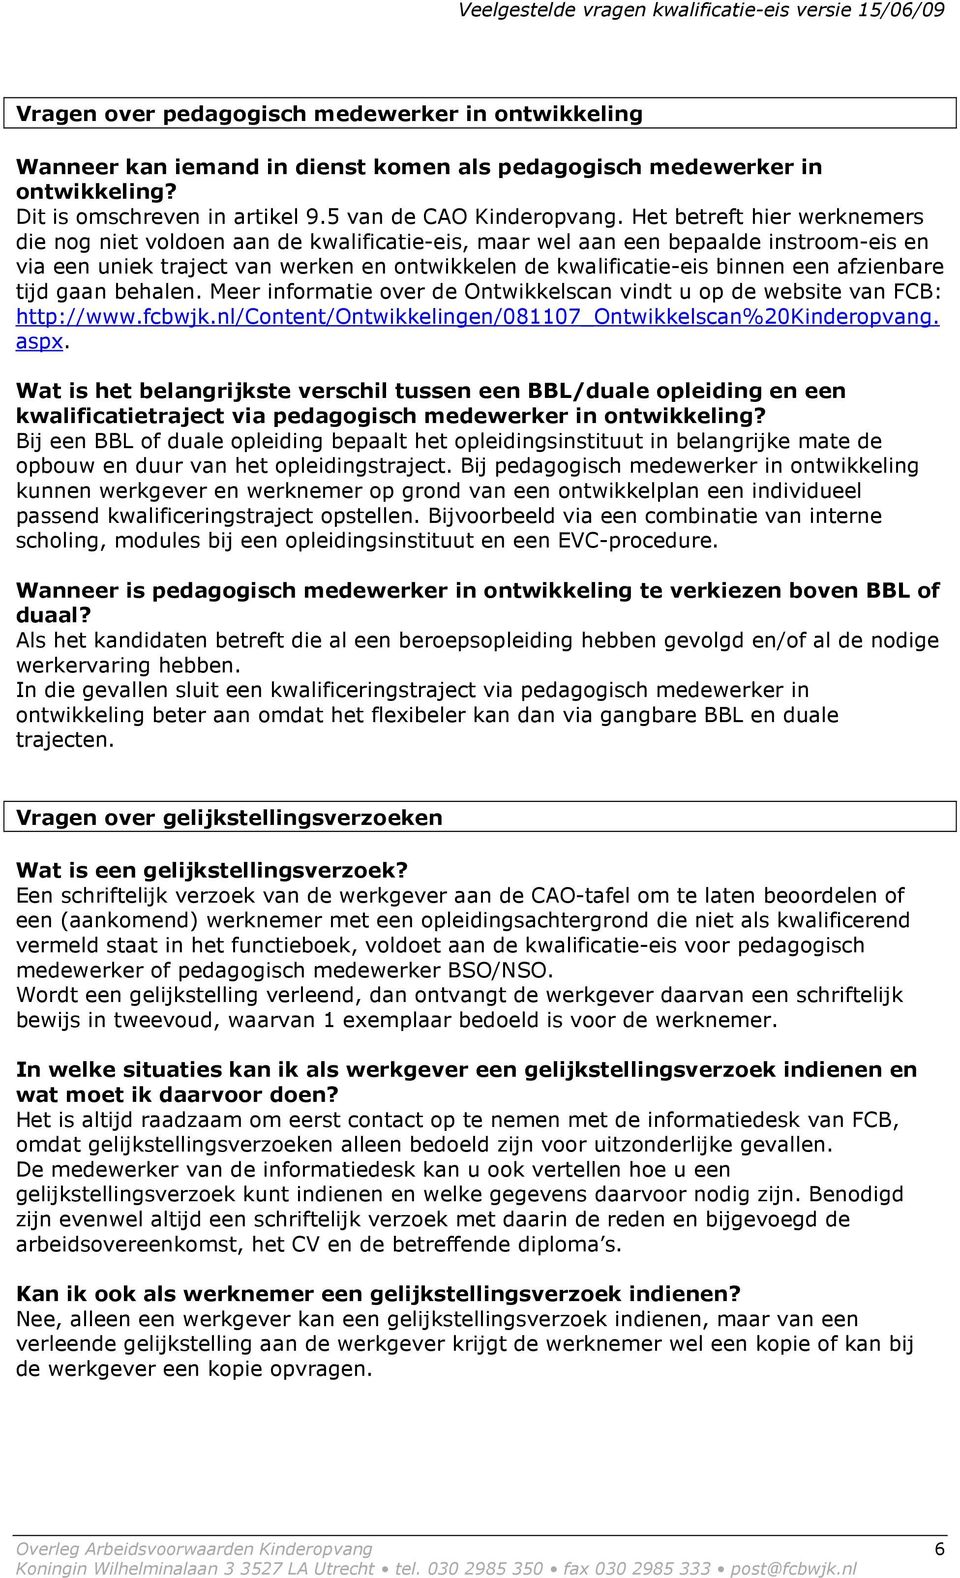 afzienbare tijd gaan behalen. Meer informatie over de Ontwikkelscan vindt u op de website van FCB: http://www.fcbwjk.nl/content/ontwikkelingen/081107_ontwikkelscan%20kinderopvang. aspx.